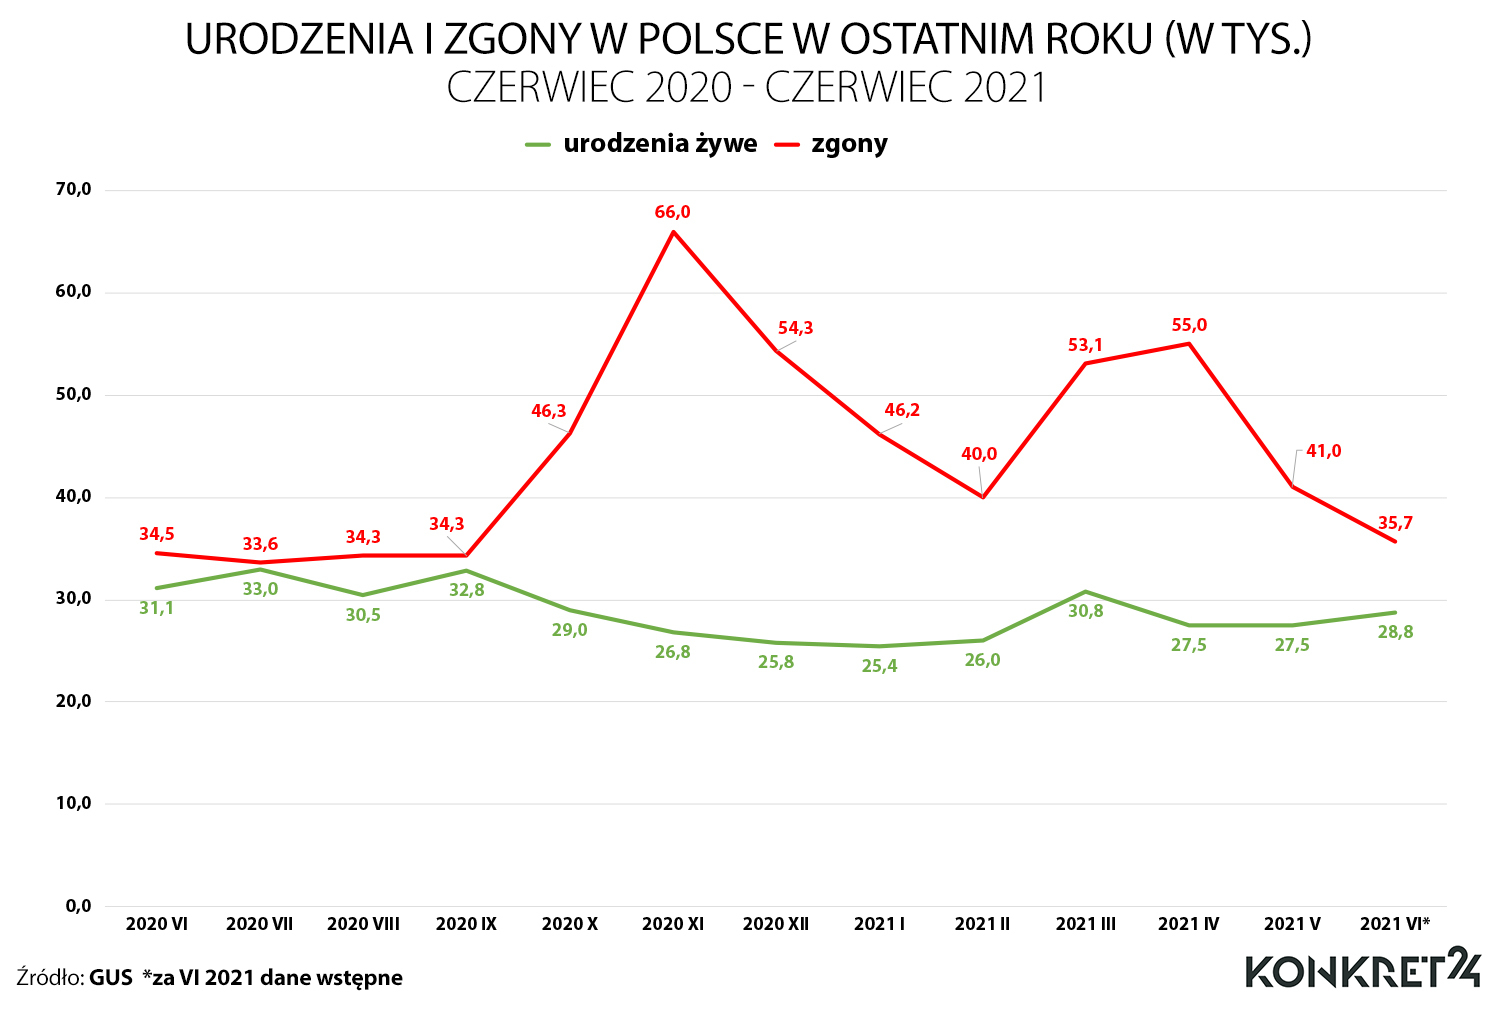 Urodzenia i zgony w Polsce w okresie czerwiec 2020 - czerwiec 2021